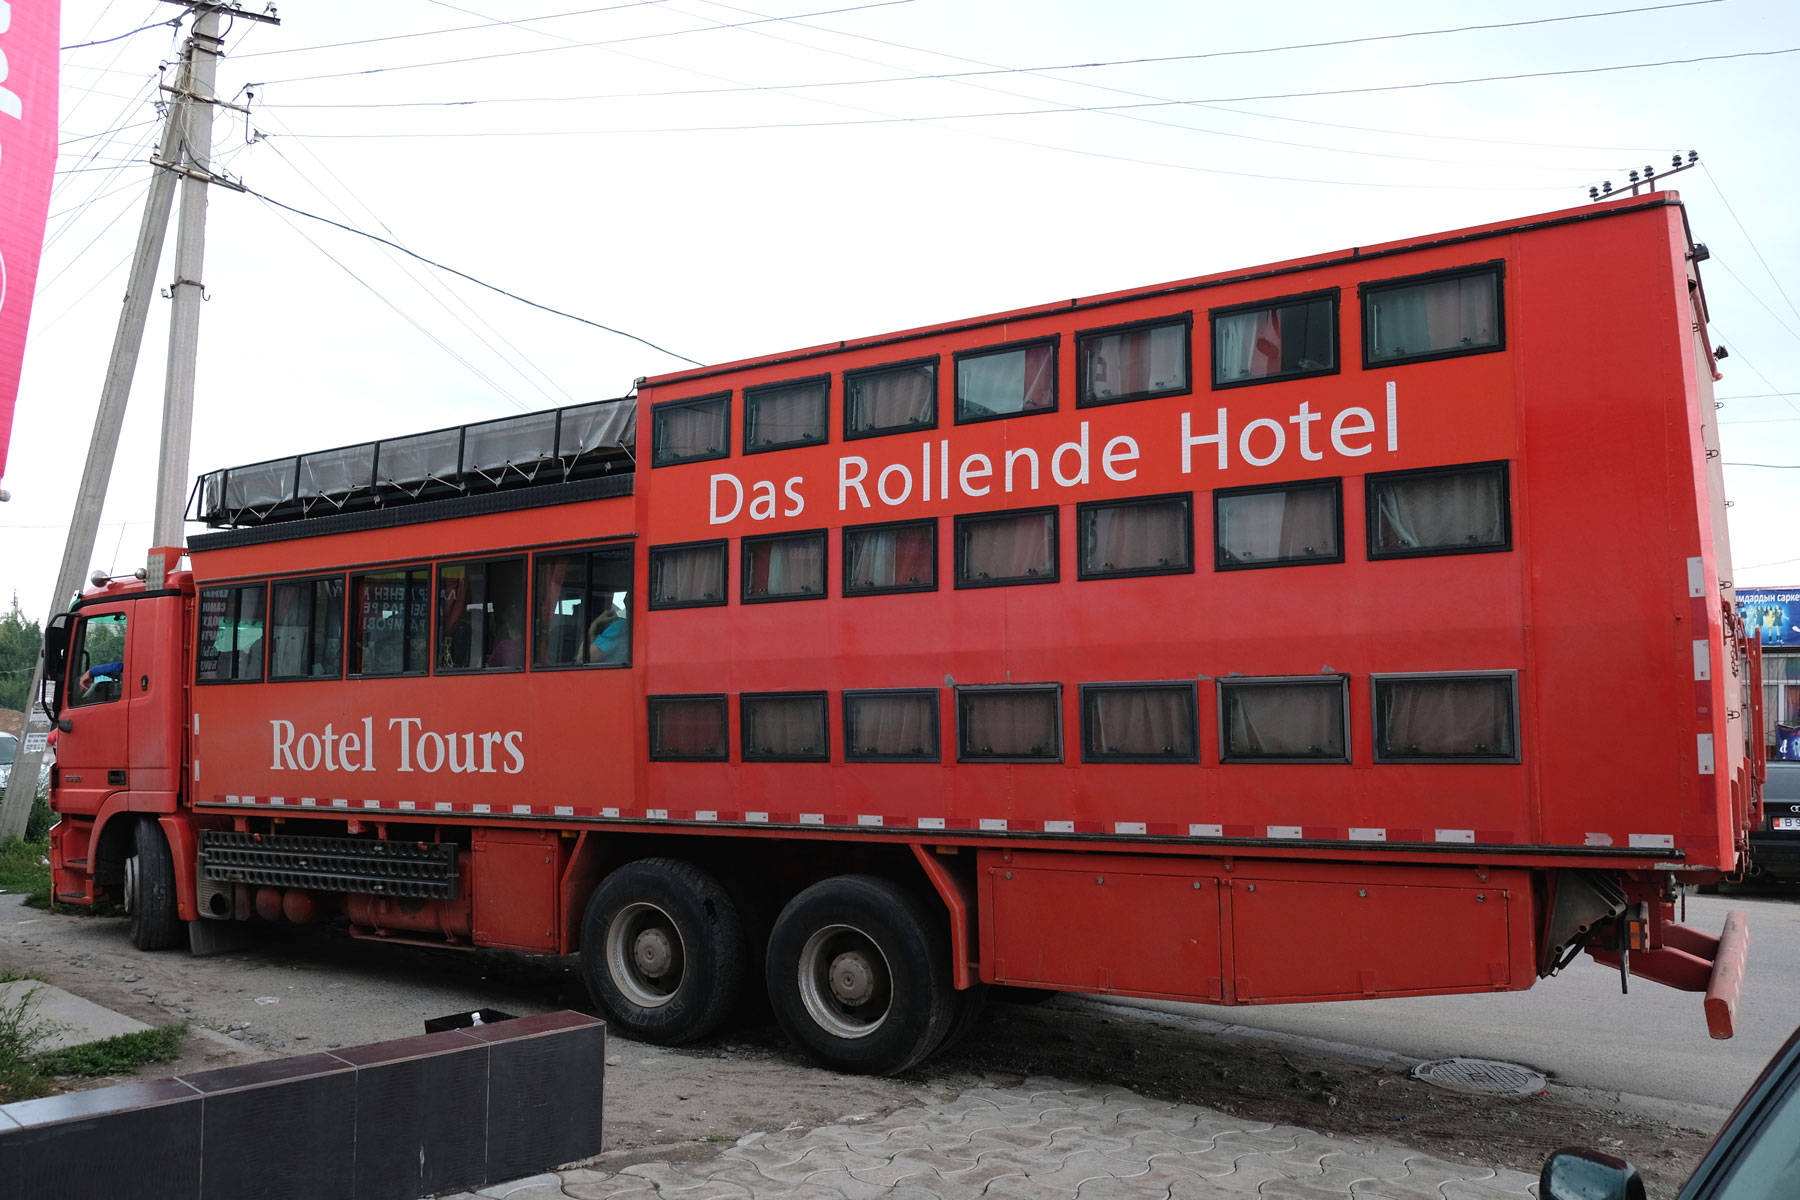 Ein großer roter Lastwagen mit vielen Fenstern, auf dem "Das Rollende Hotel" steht.